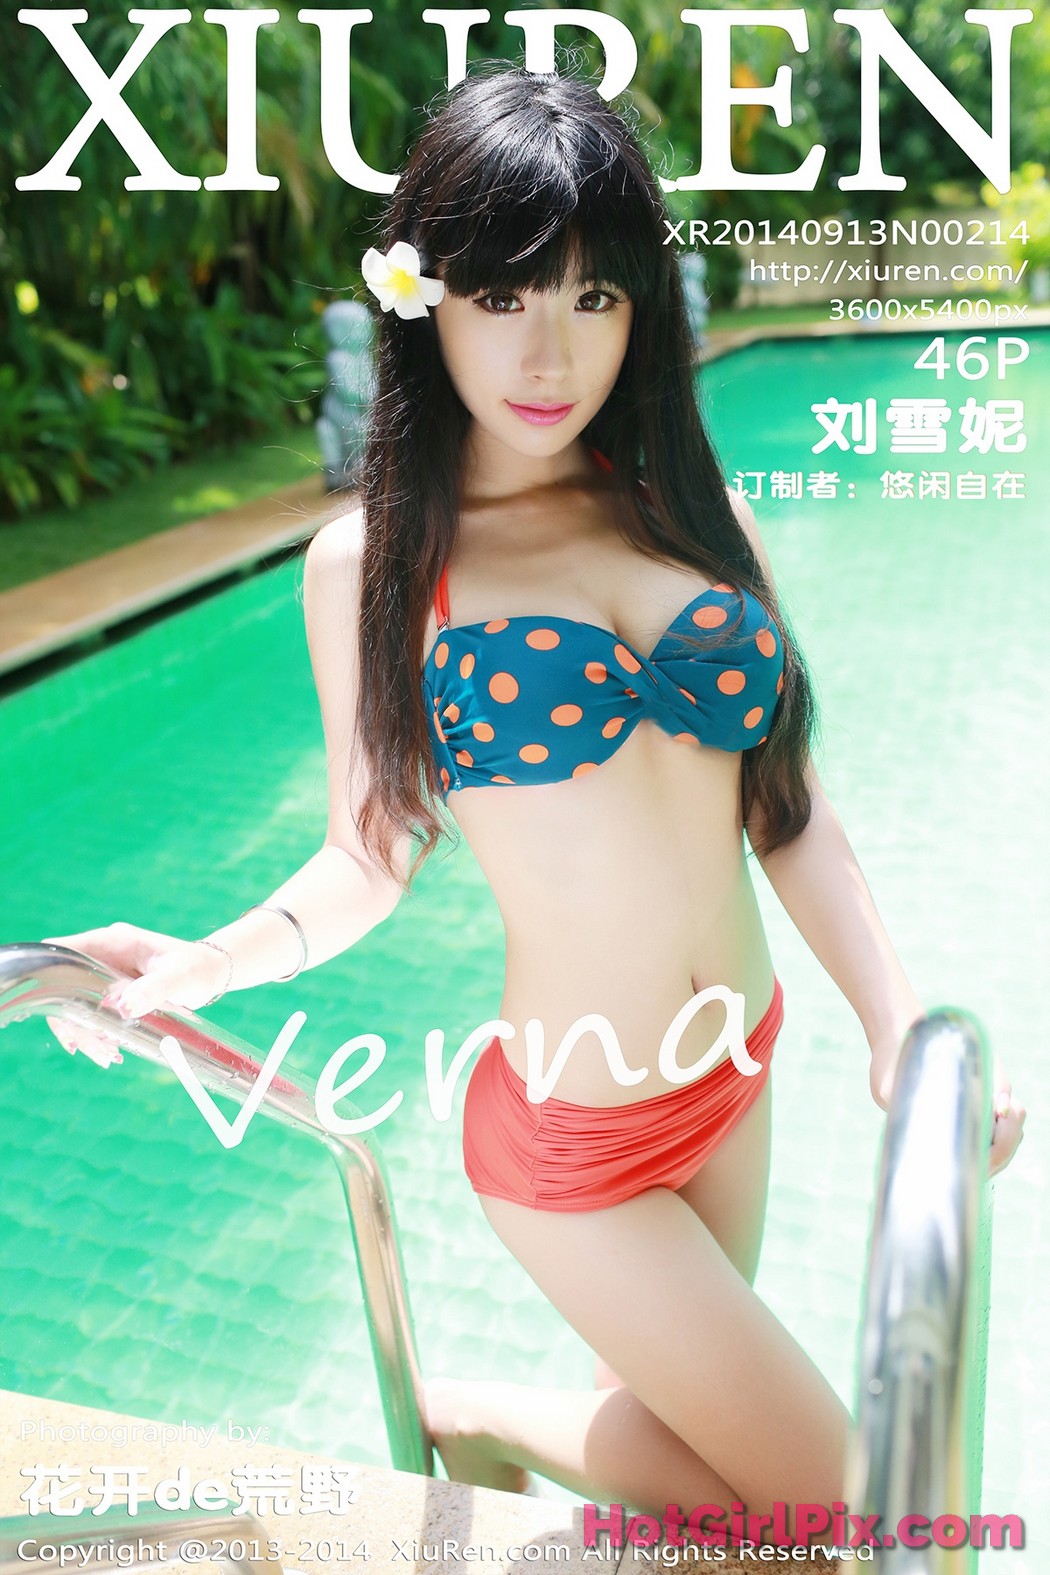 [XIUREN] No.214 Liu Xue Ni 刘雪妮Verna Cover Photo